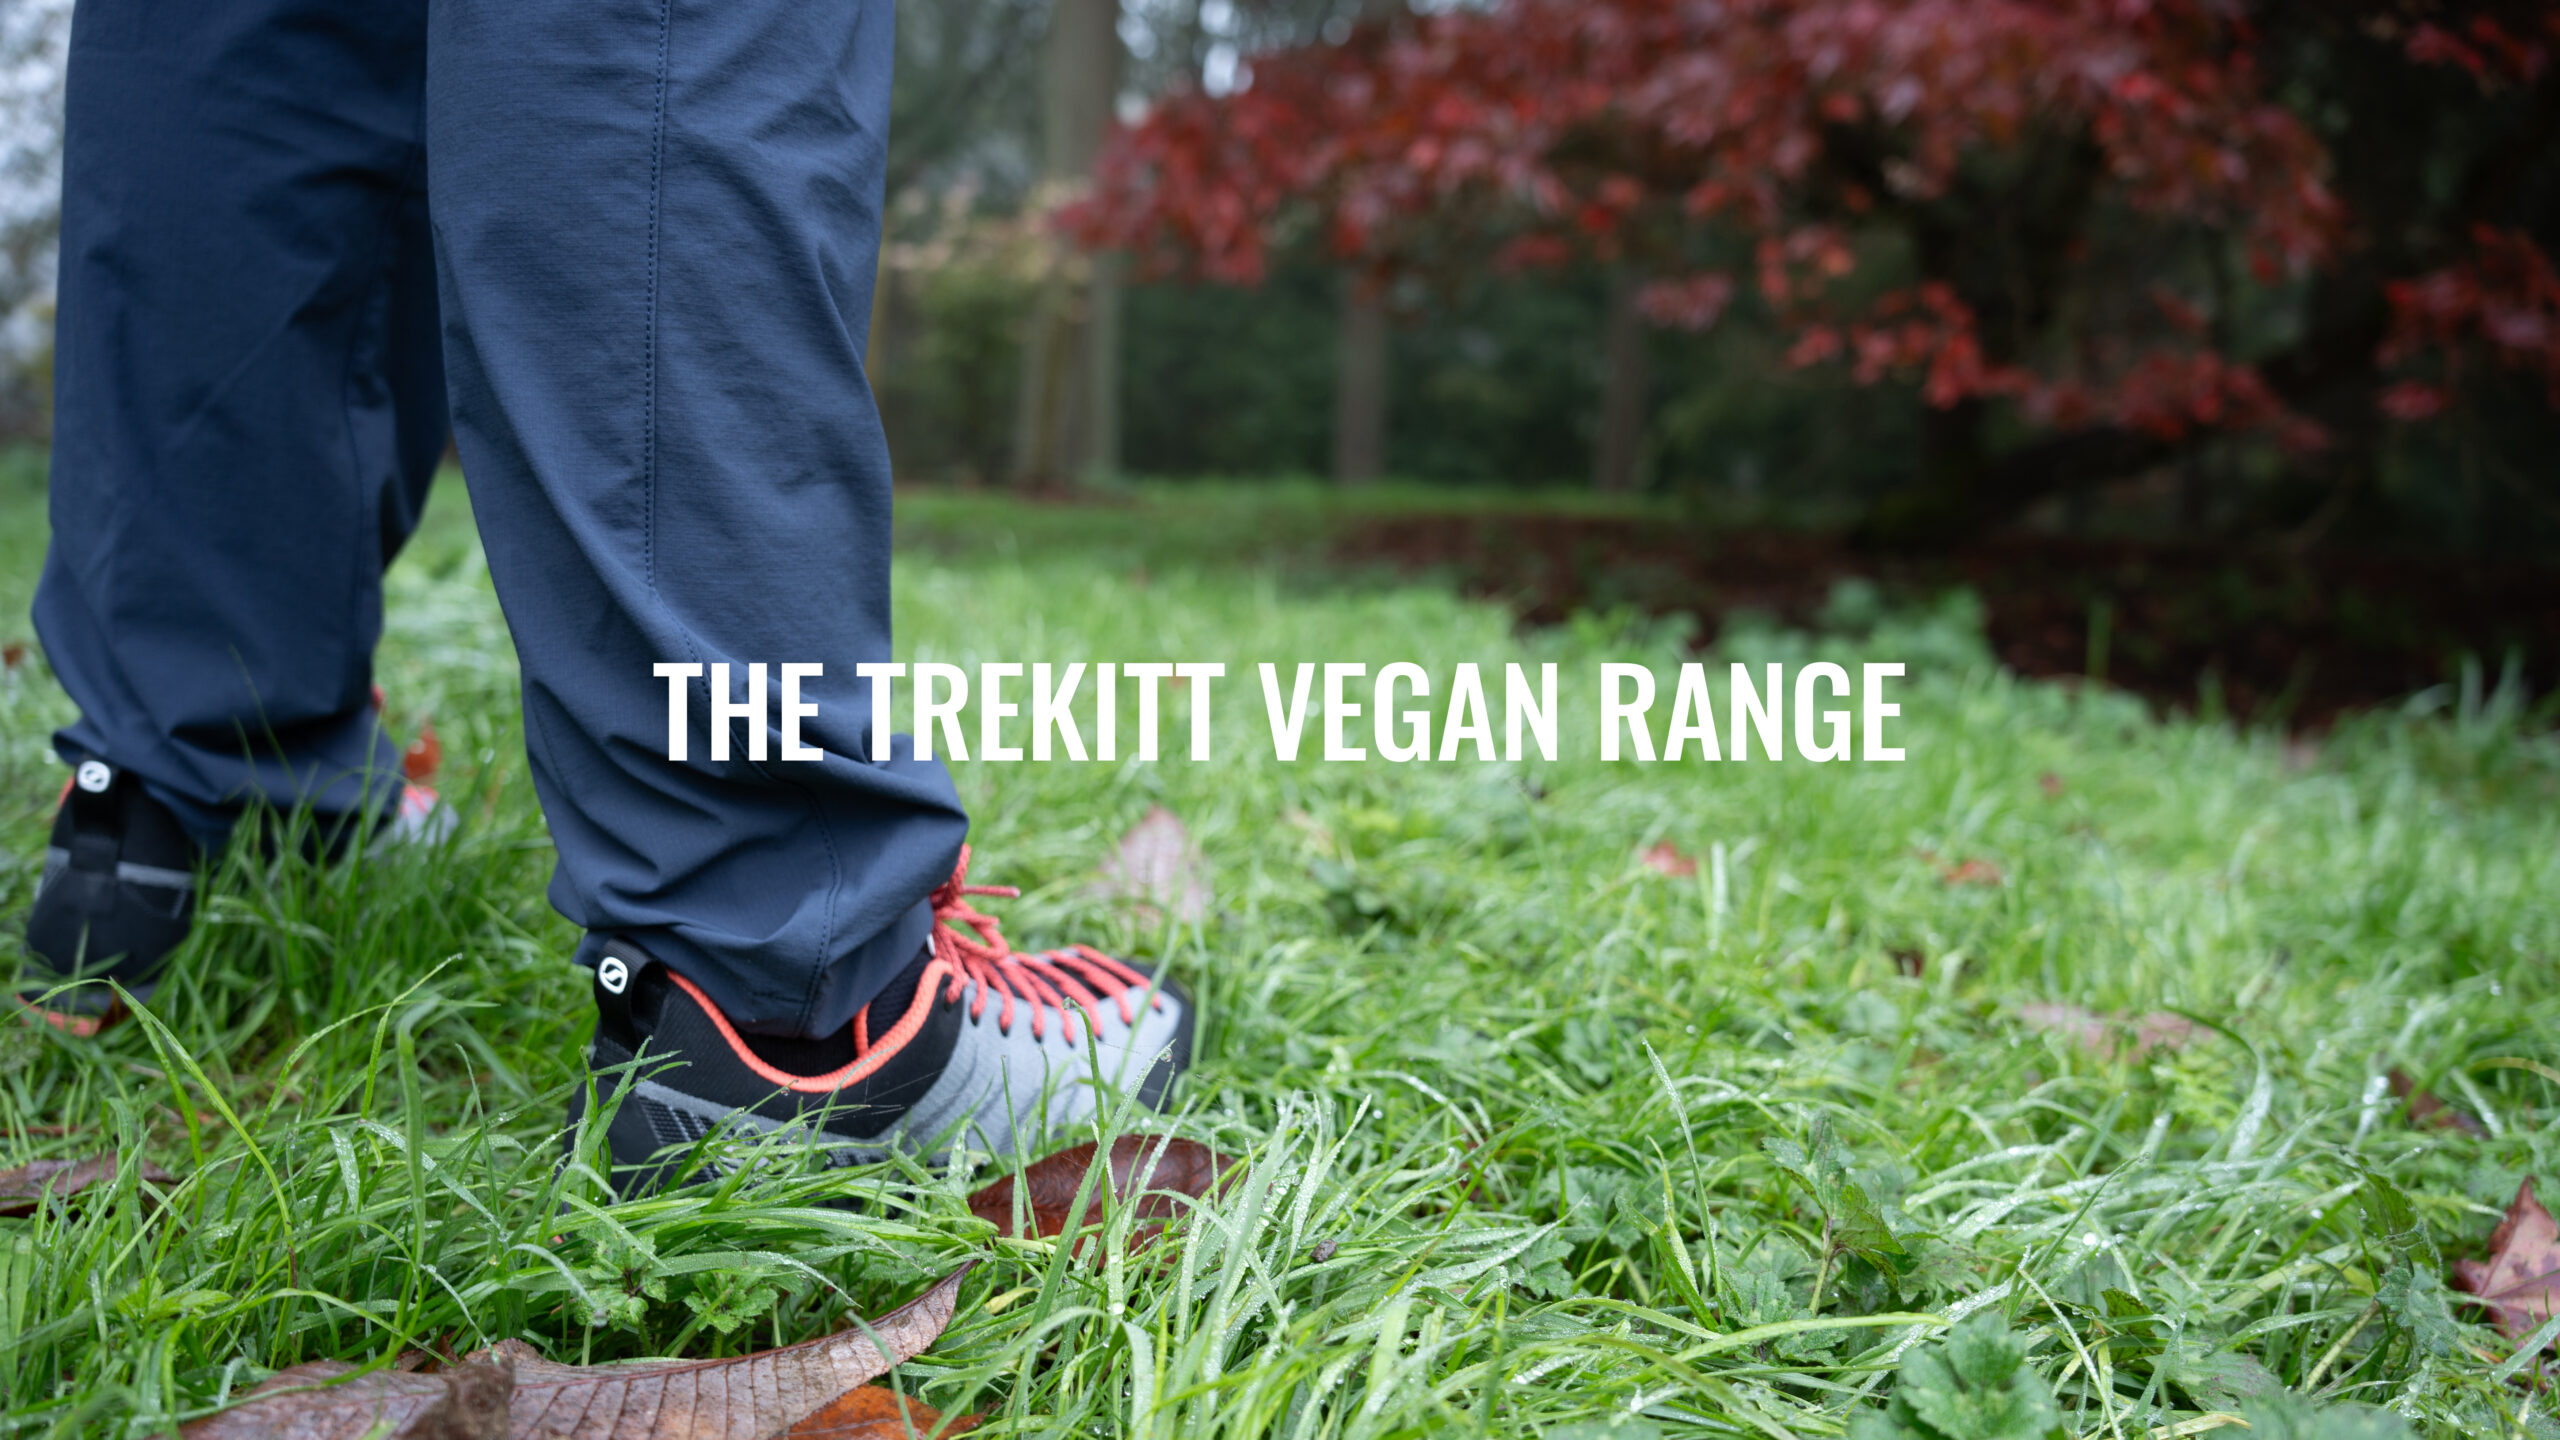 The Trekitt Vegan Range